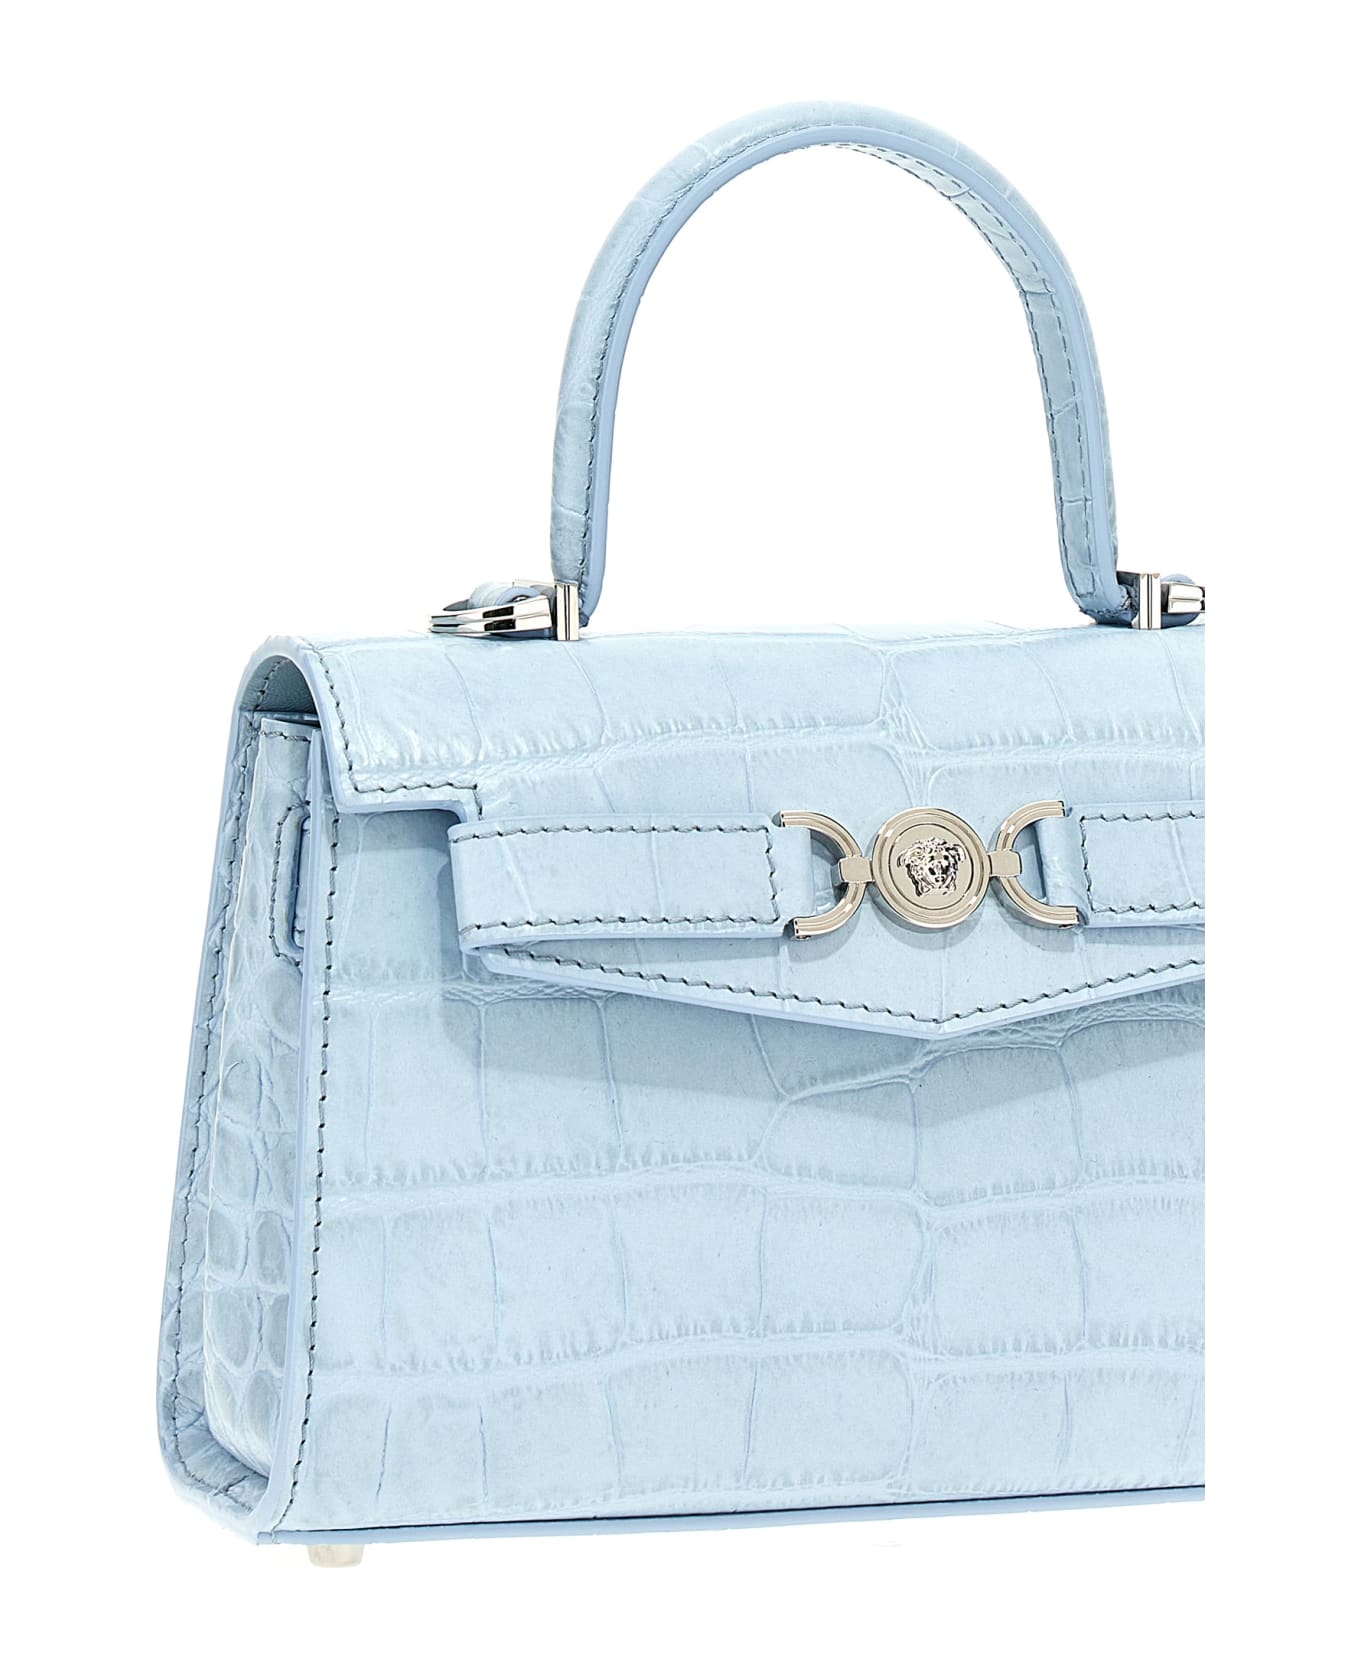 Versace 'medusa '95' Small Handbag - Light Blue